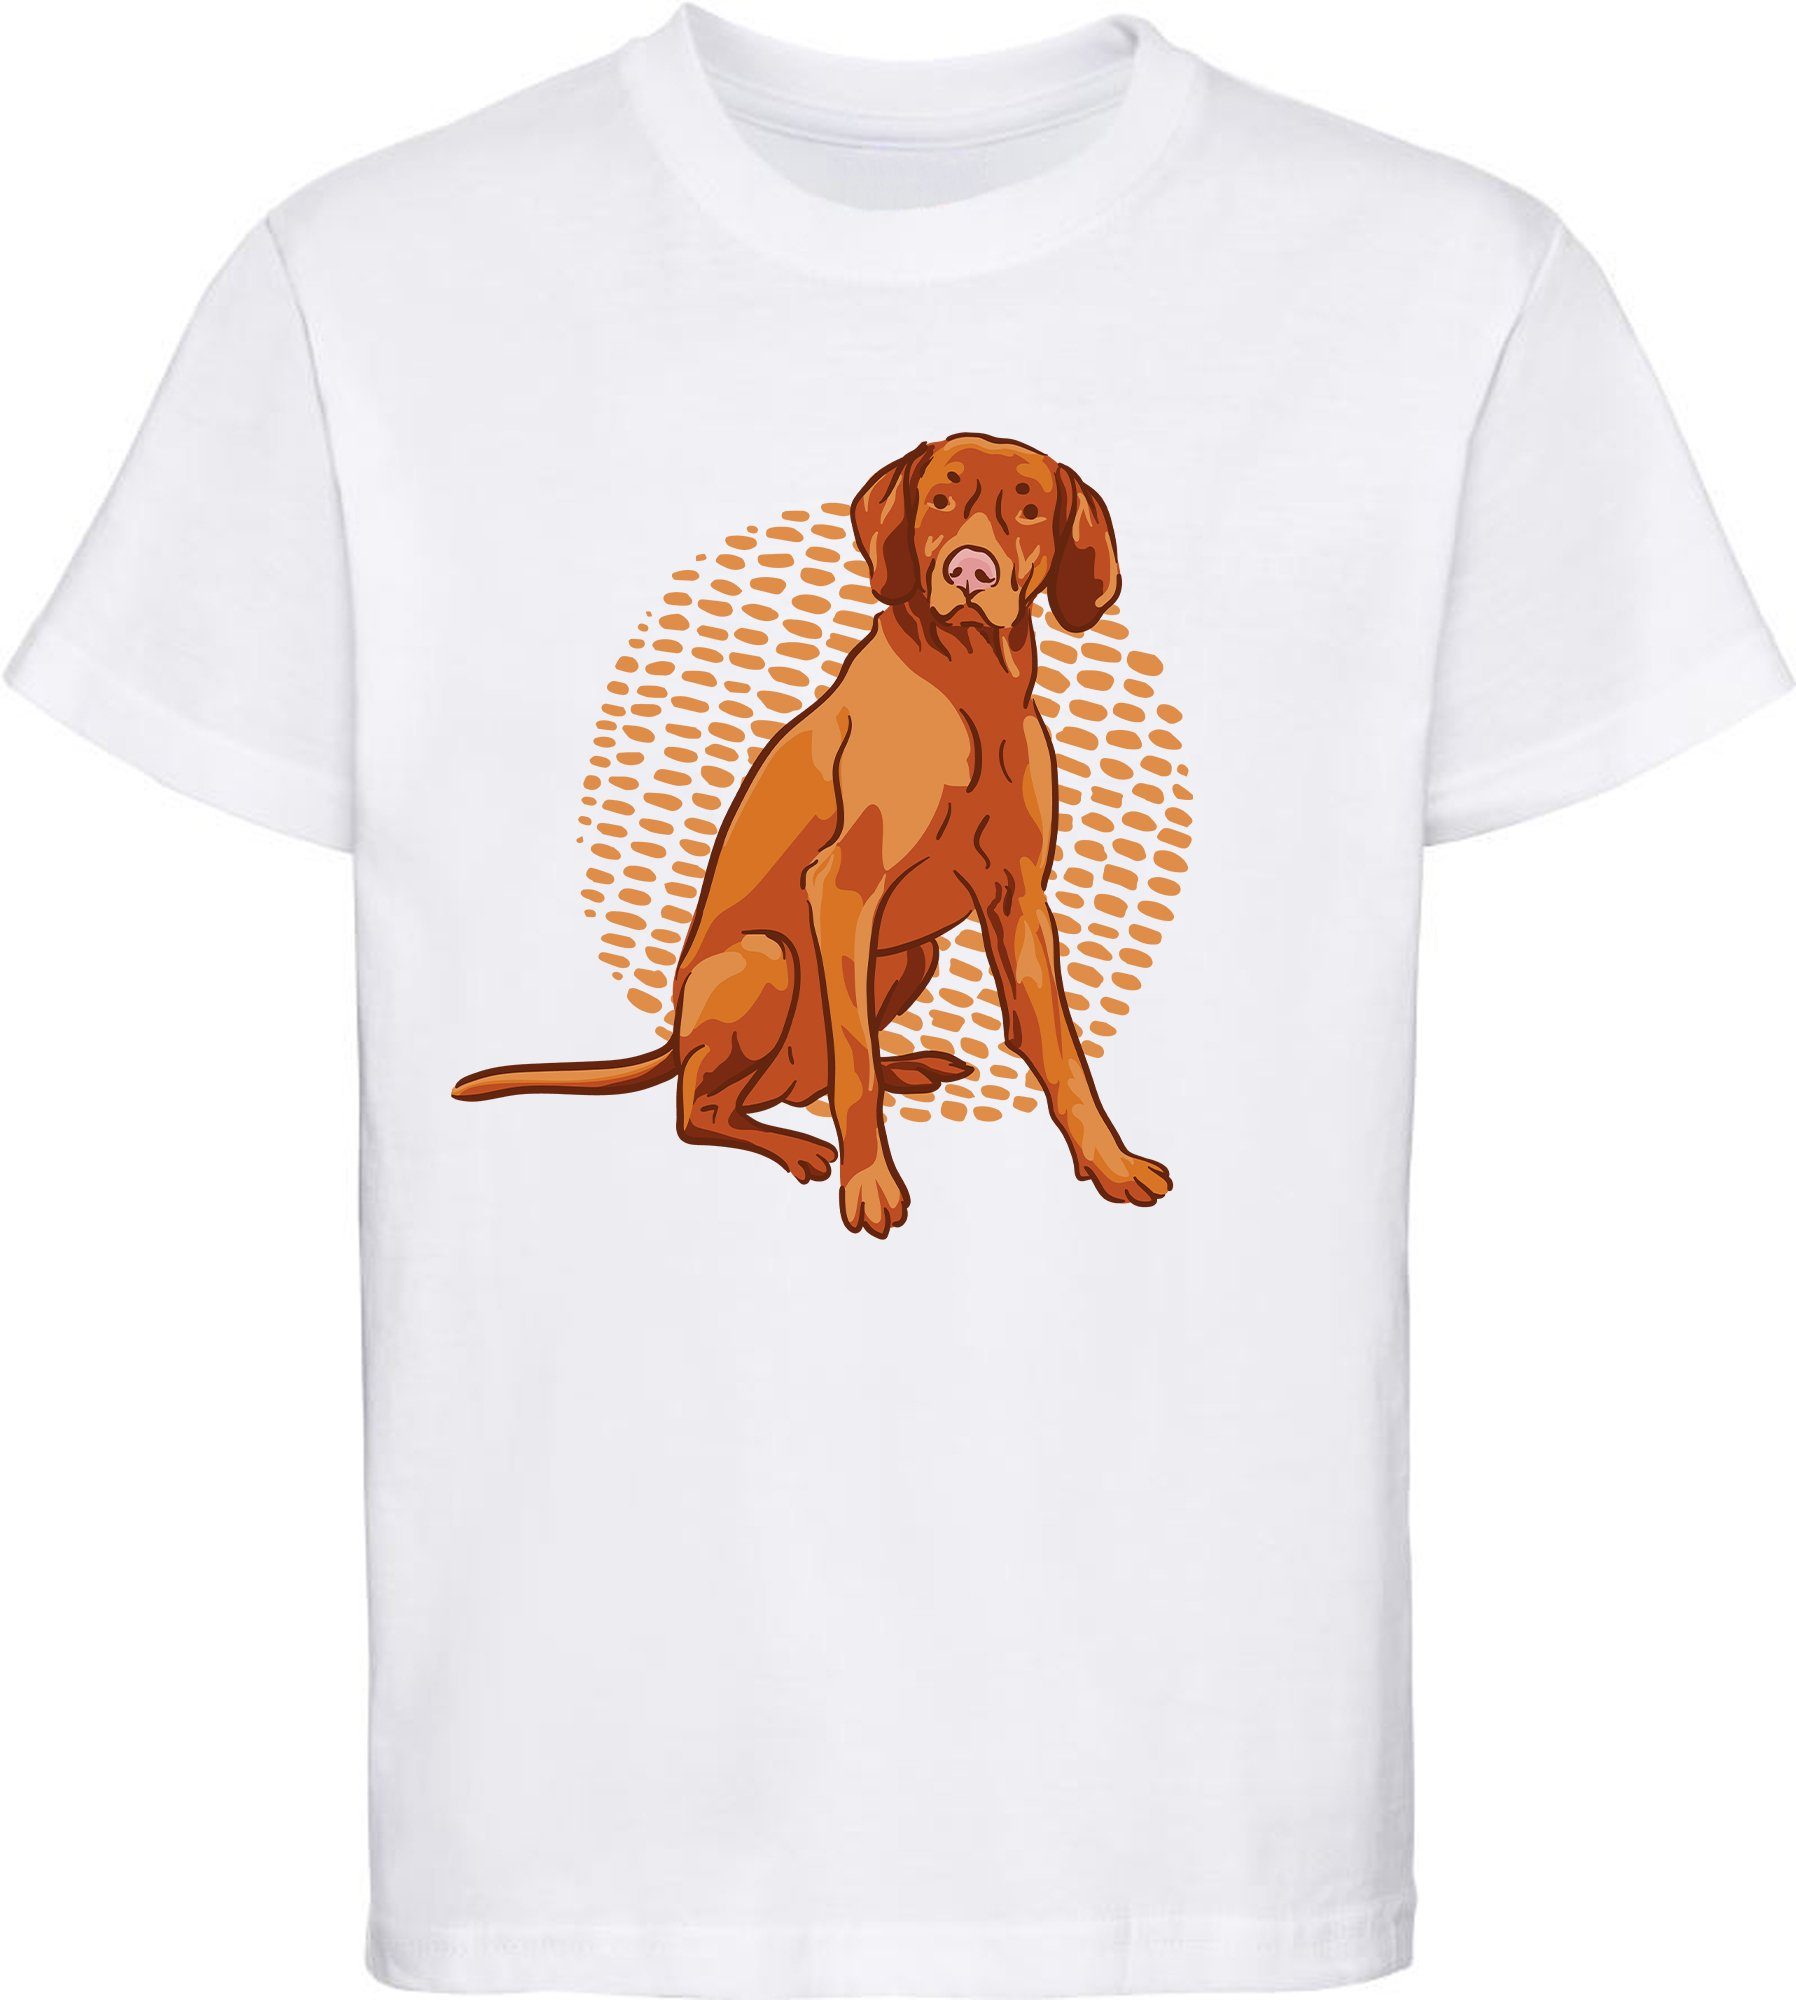 MyDesign24 T-Shirt Kinder Hunde Print Shirt bedruckt - Sitzender brauner Hund Baumwollshirt mit Aufdruck, i257 weiss